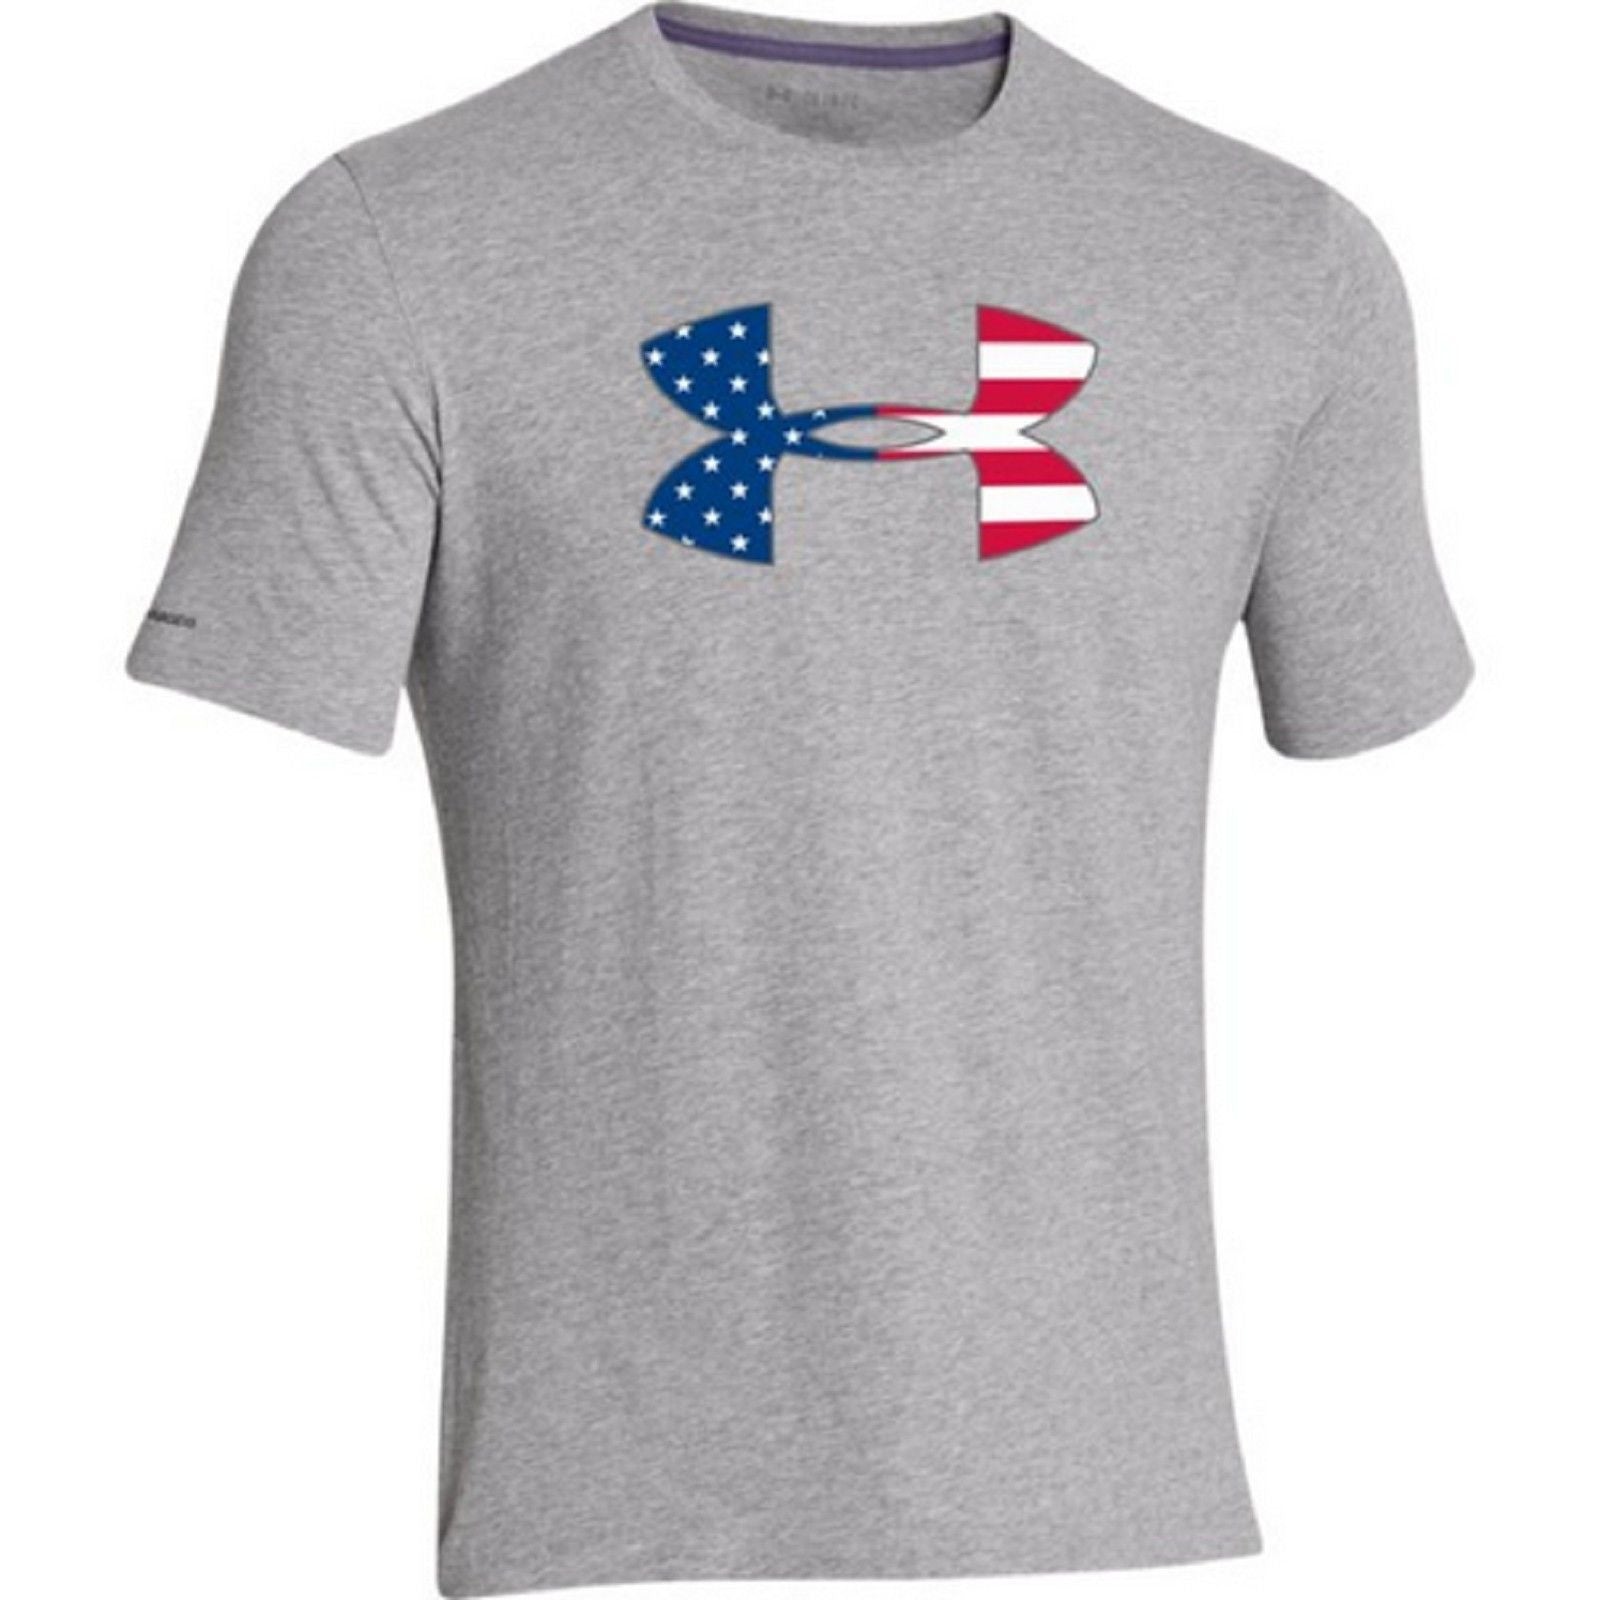 Under Armour USA Flag UA Logo T-Shirt - Men's Patriotic American Flag ...